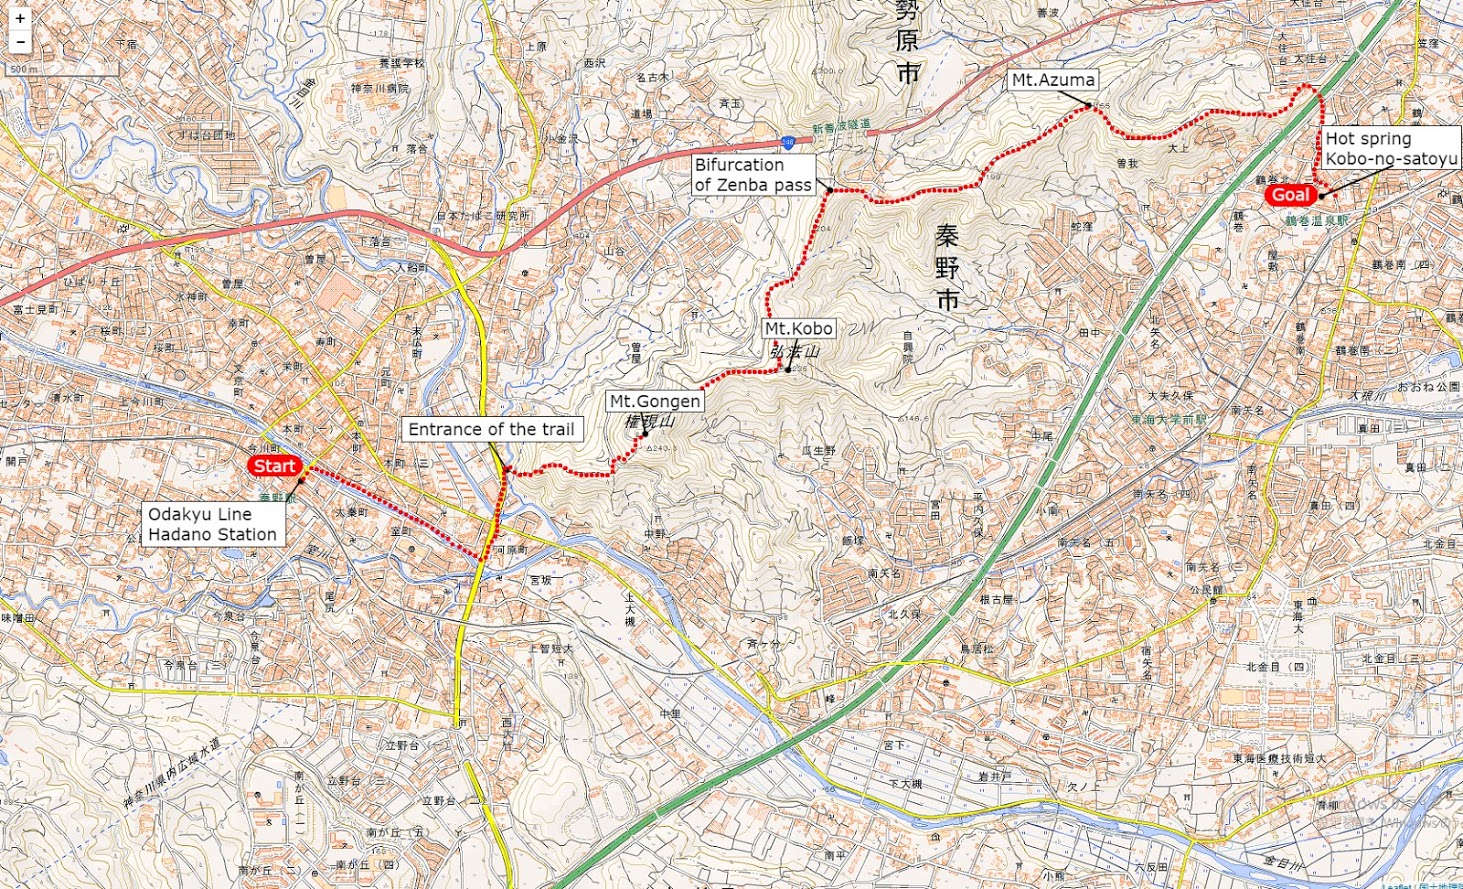 弘法山ハイキングマップ | クリックすると別タブで拡大図が開きます。